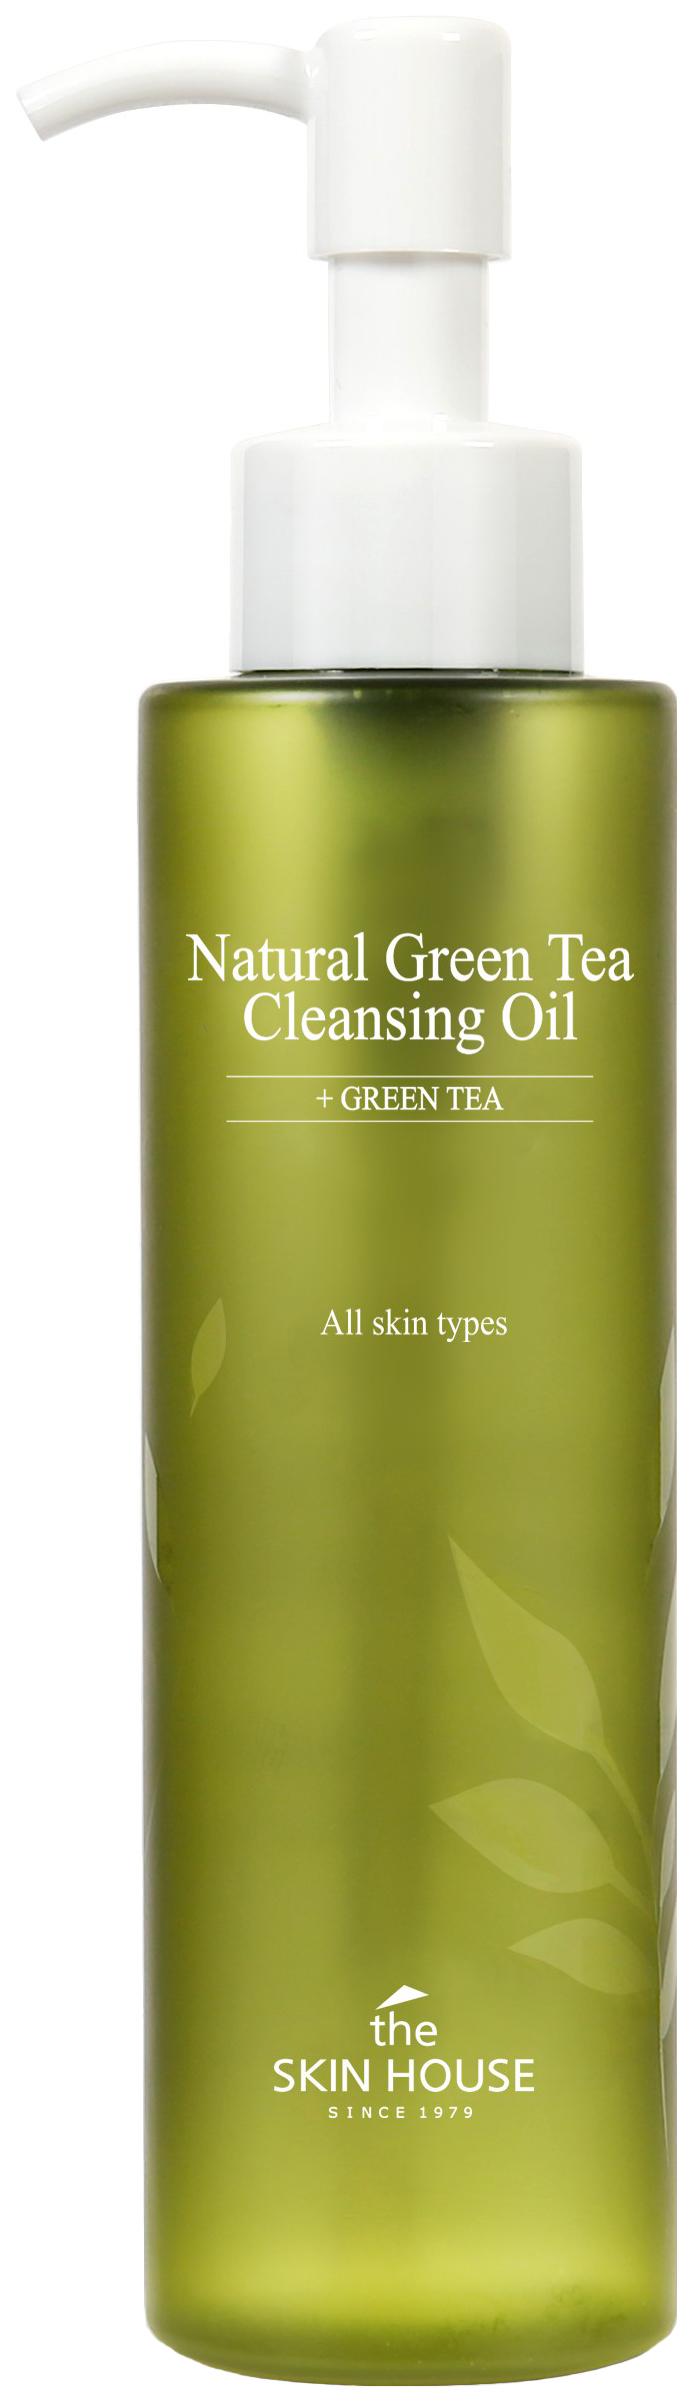 Купить Гидрофильное масло The Skin House с экстрактом зелёного чая, 150 мл